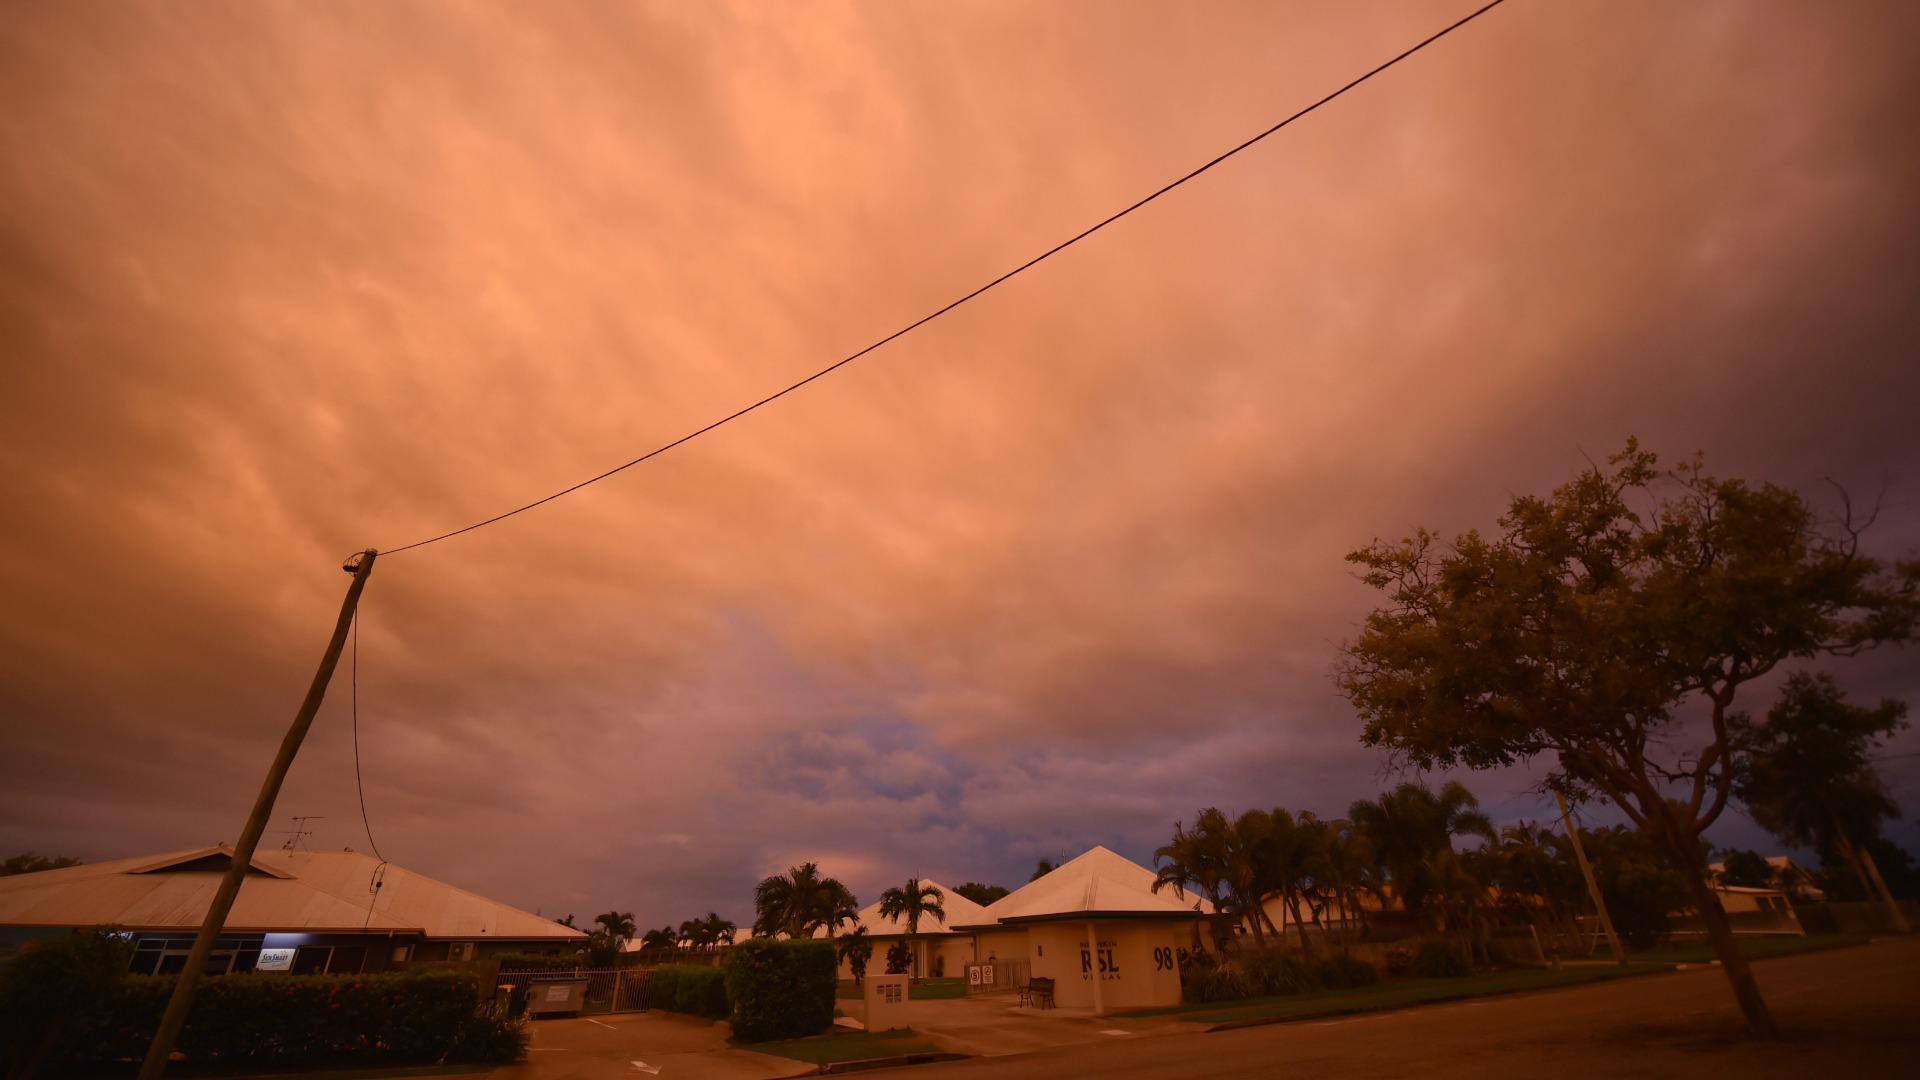 El potente ciclón Debbie toca el noreste de Australia y obliga a evacuar a miles de personas